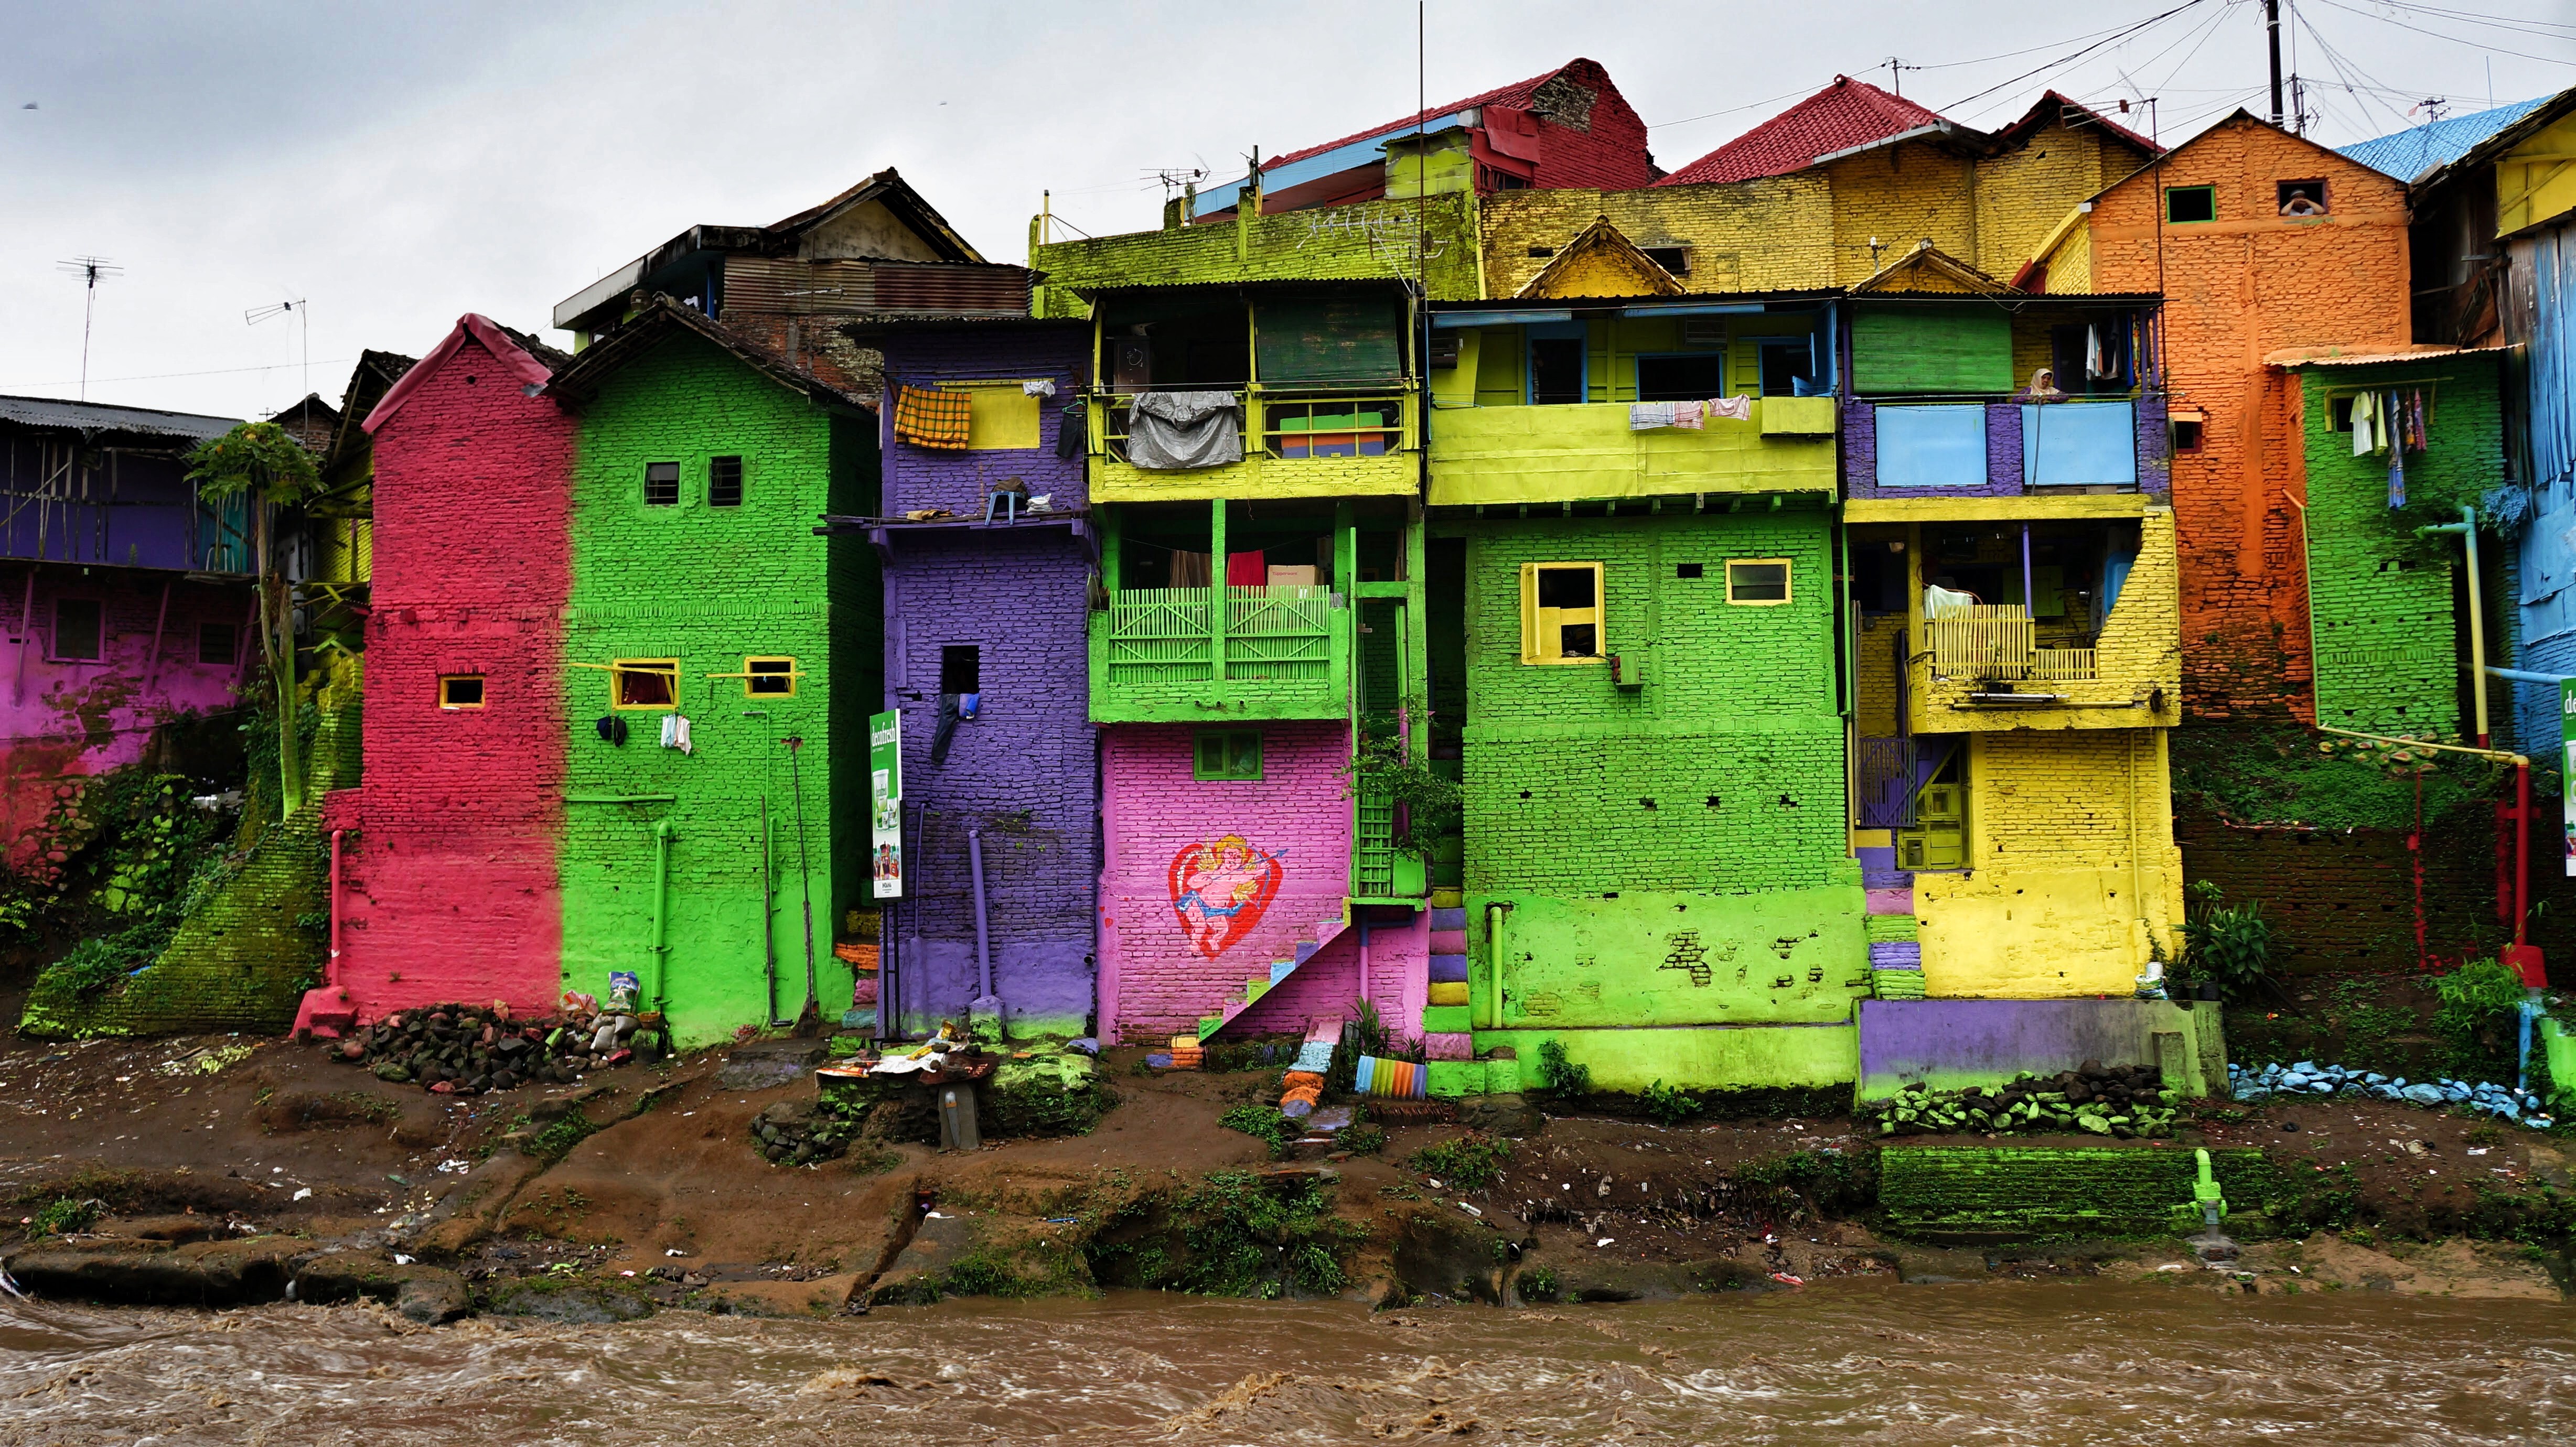 Foto s Video s Kampung  Warna  Warni het opgekleurde dorp 